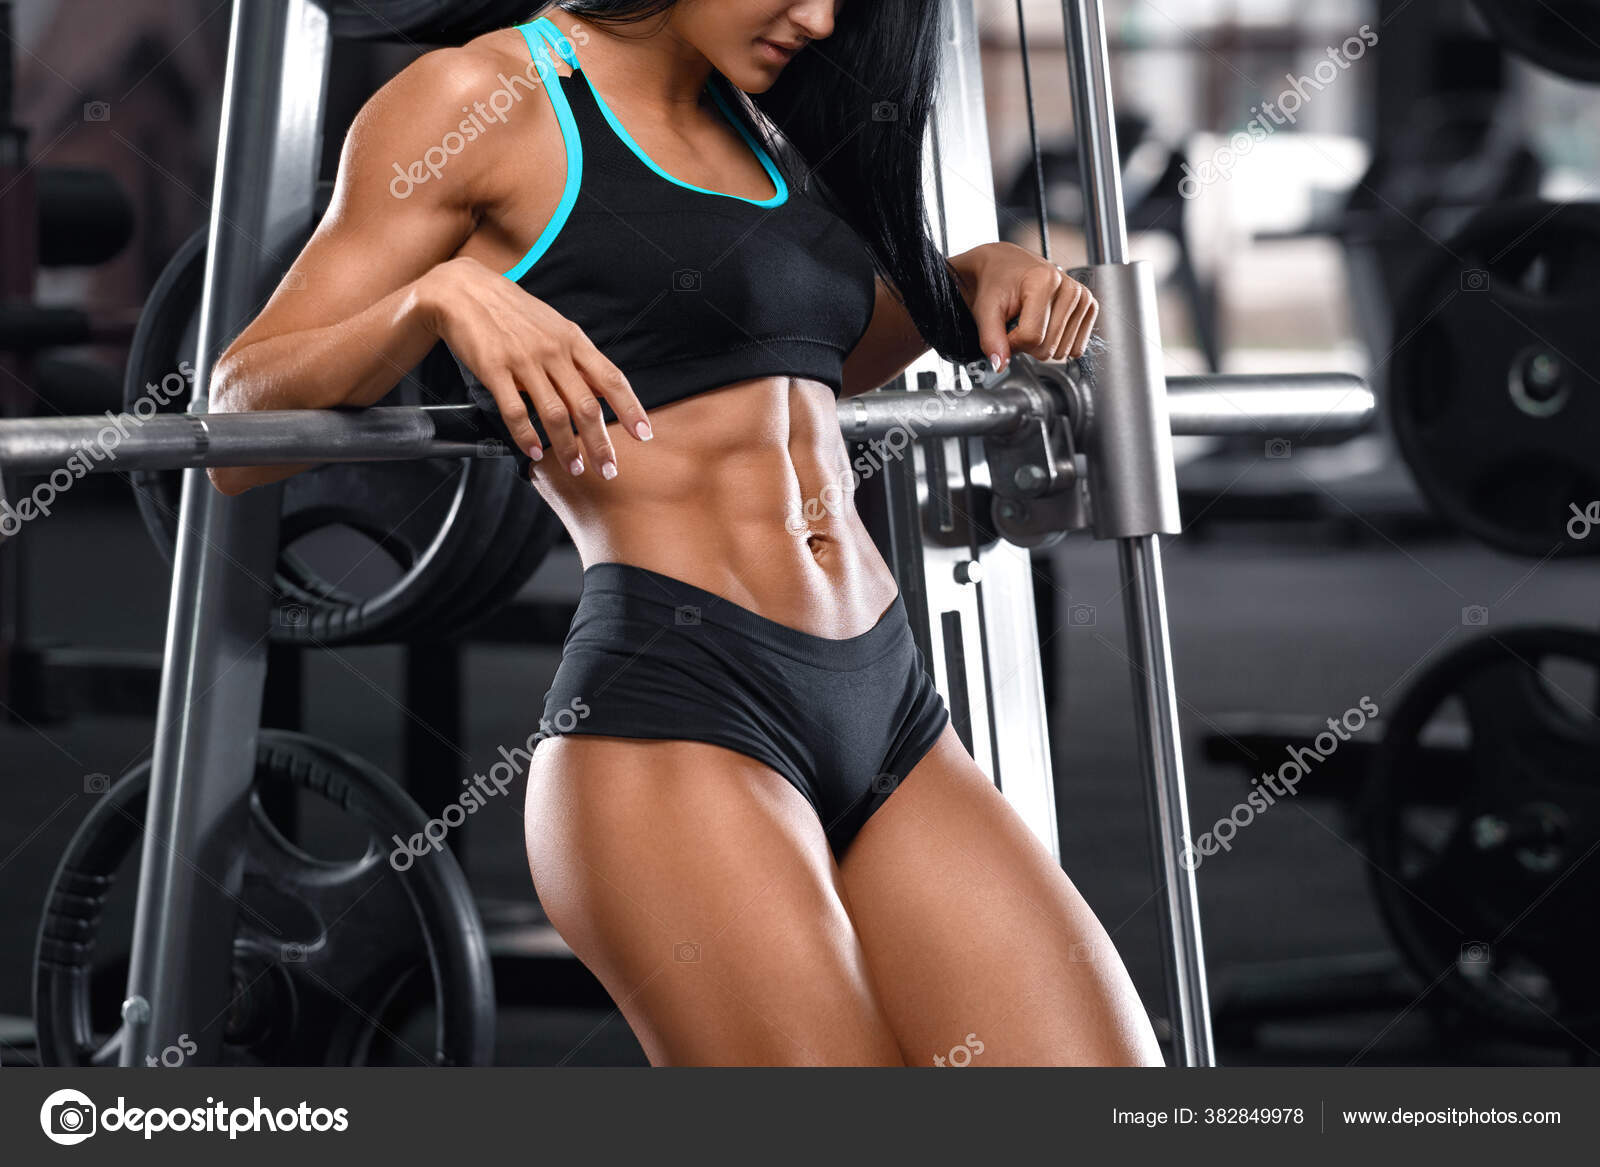 Mujer Fitness Mostrando Abdominales Vientre Plano Gimnasio Hermosa Chica  Atlética: fotografía de stock © Nikolas_jkd #382849978